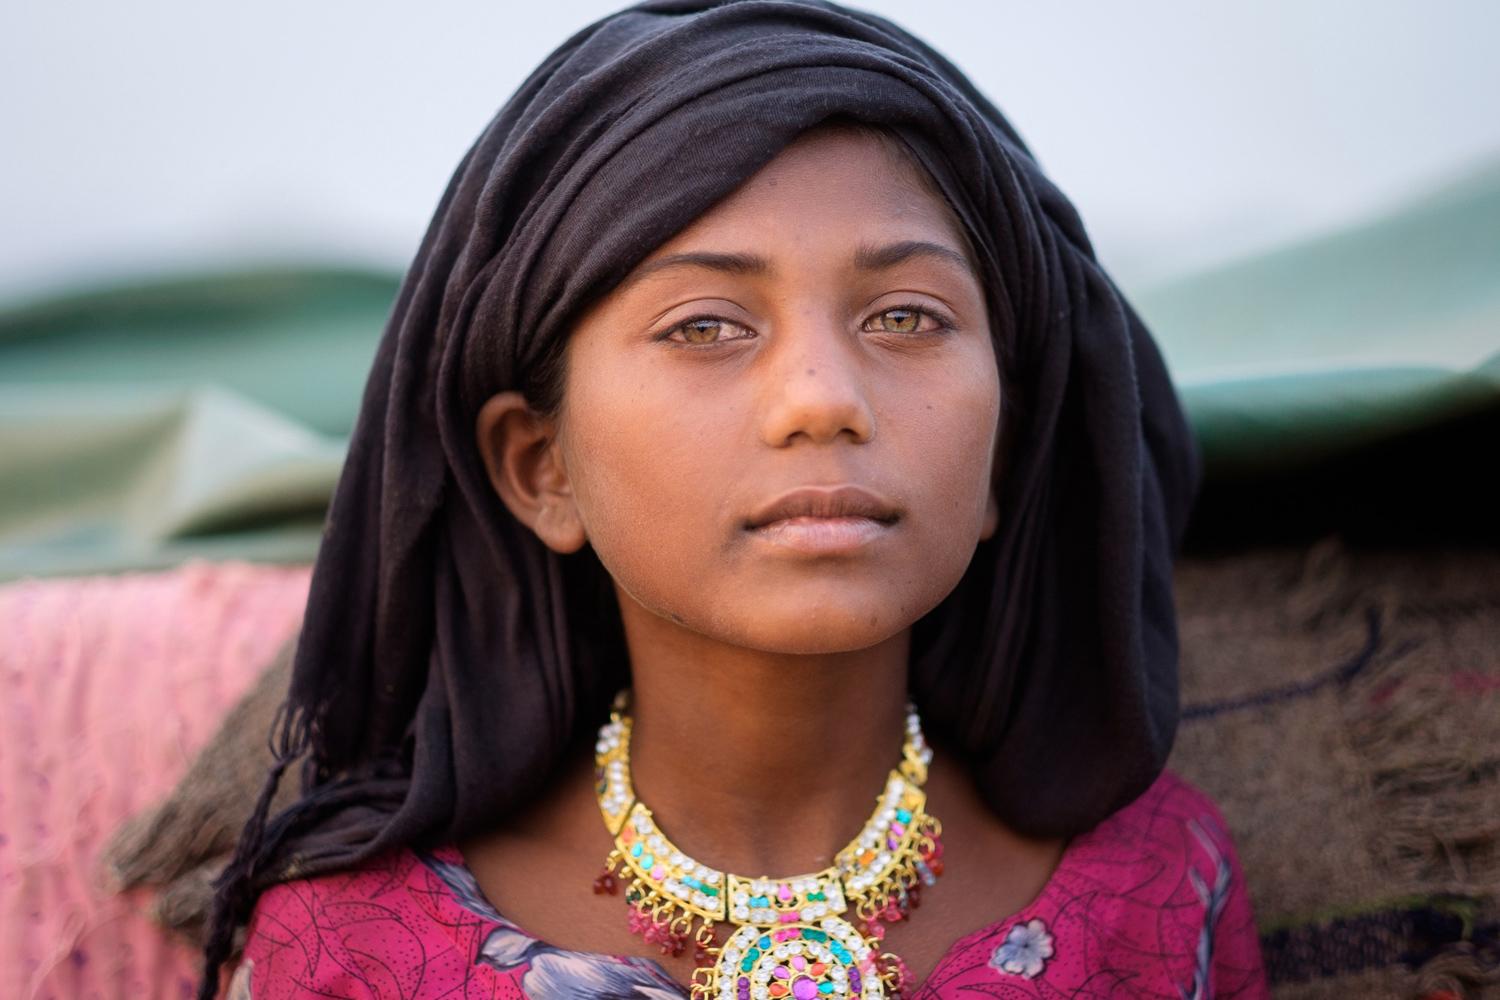 Красивые девушки эфиопии